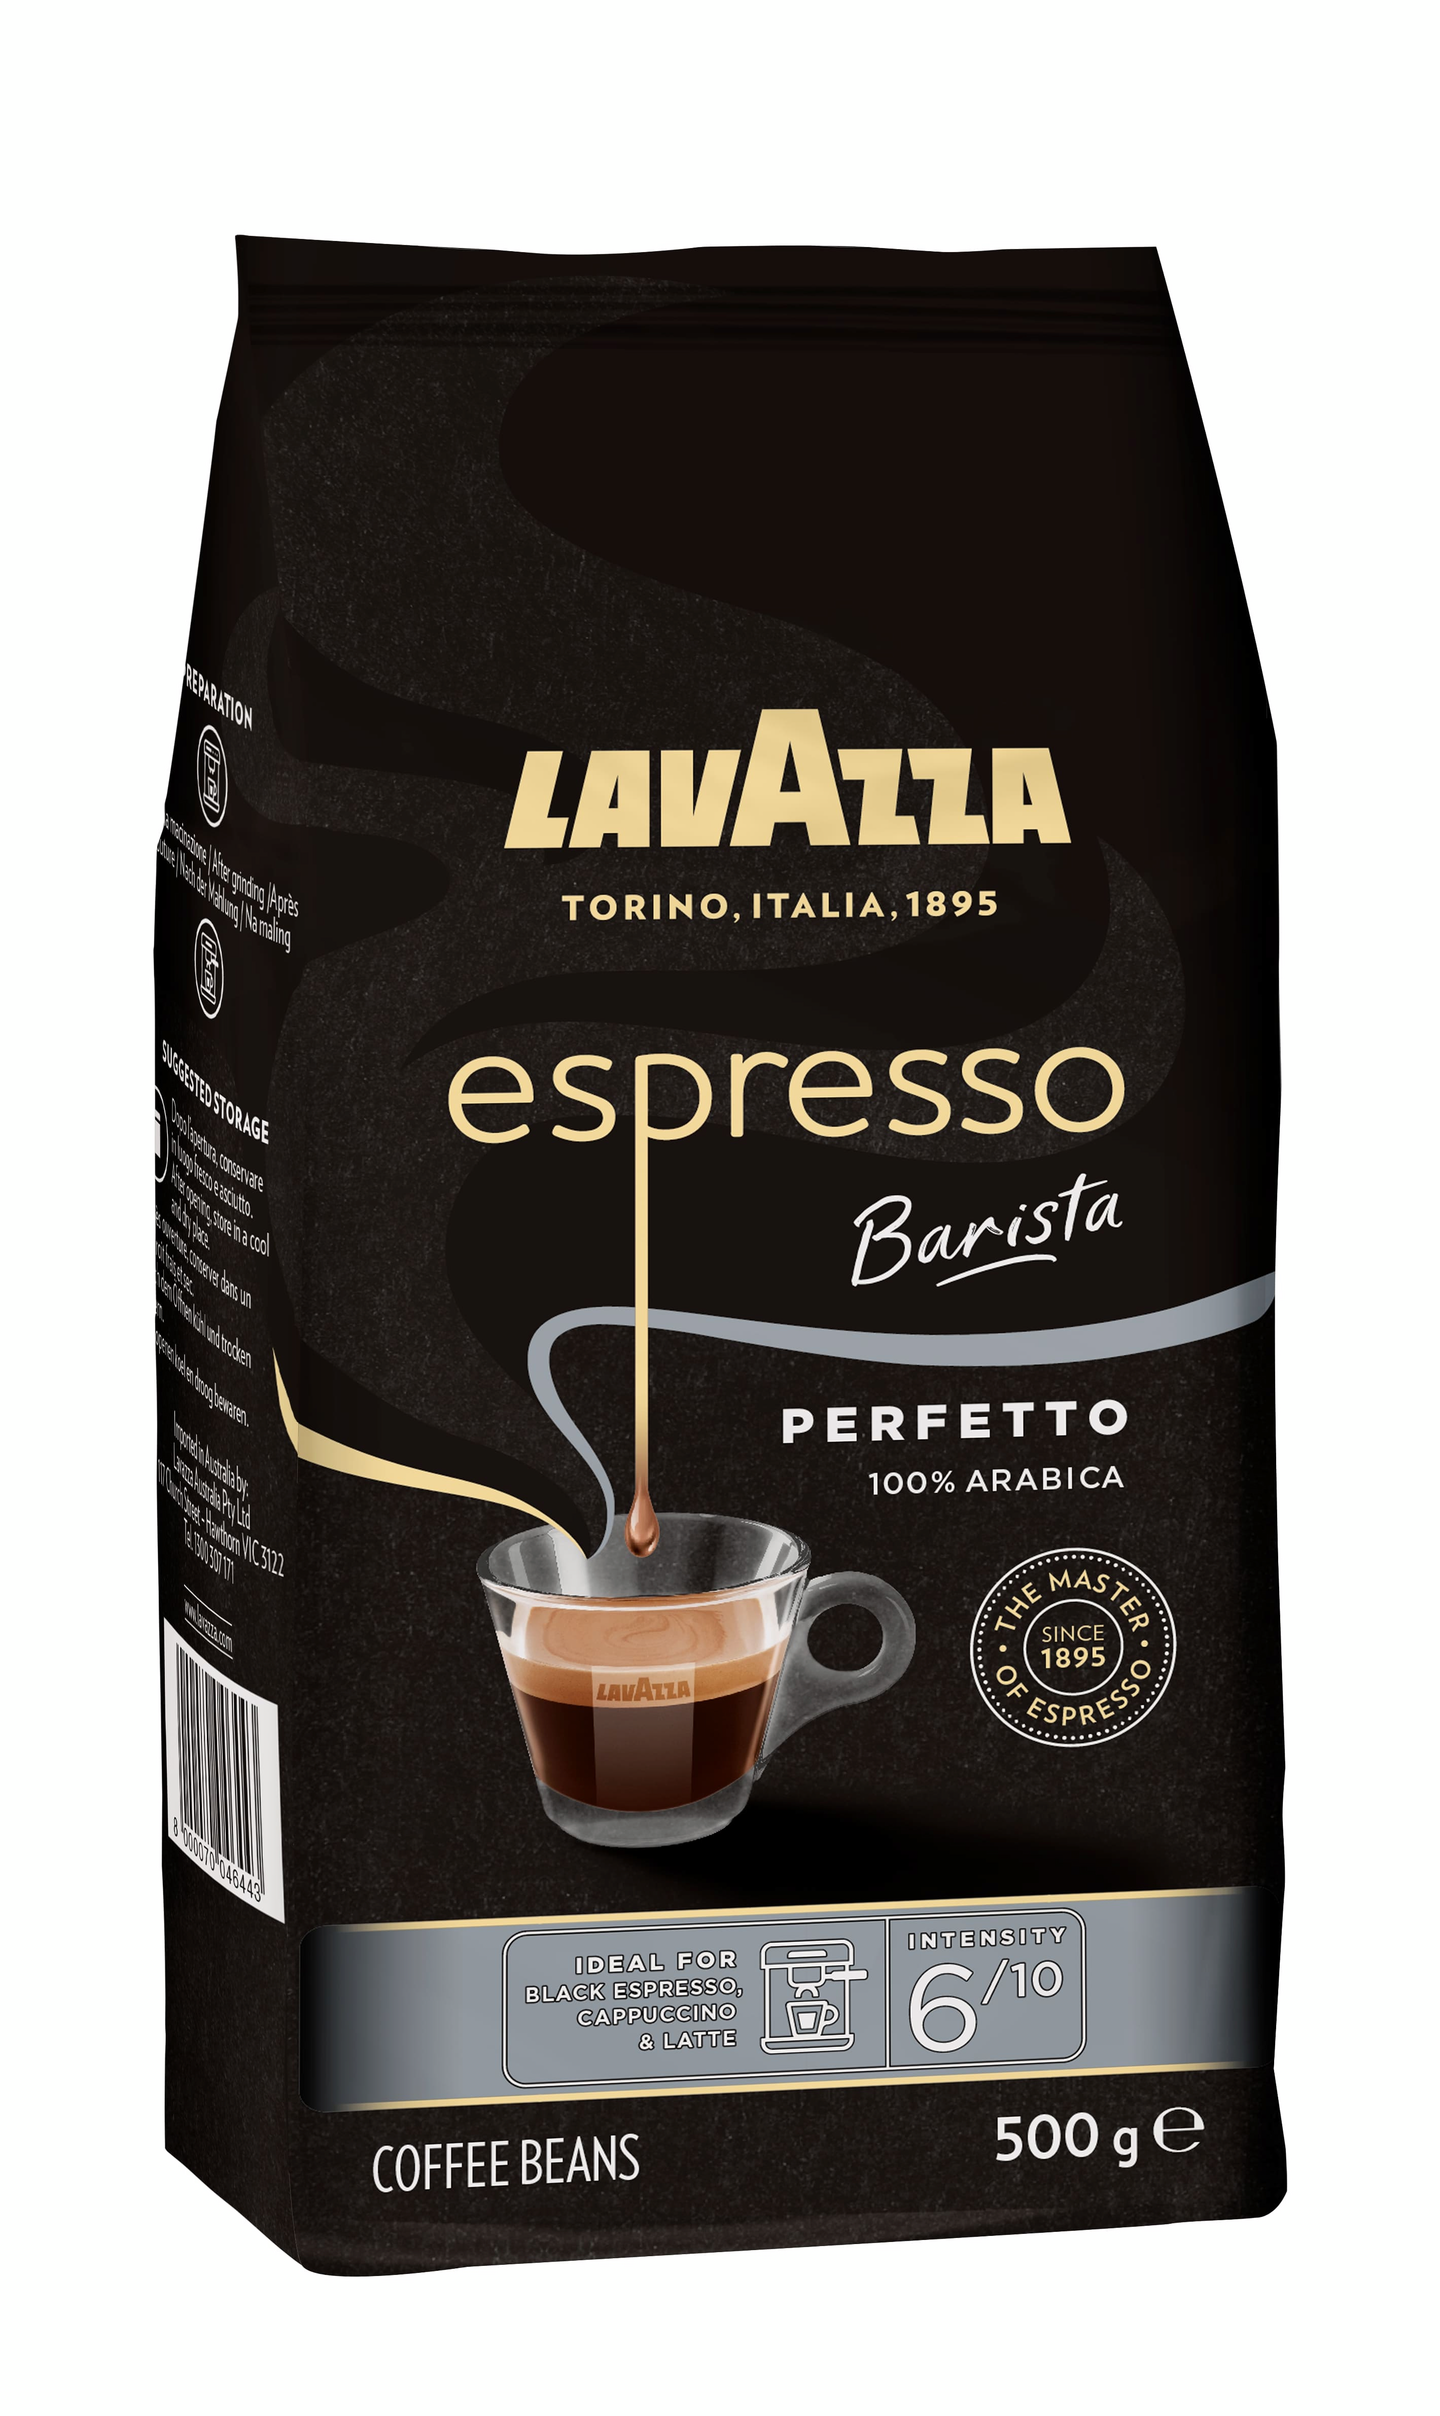 Lavazza Espresso Barista Perfetto kahvipapu 500g